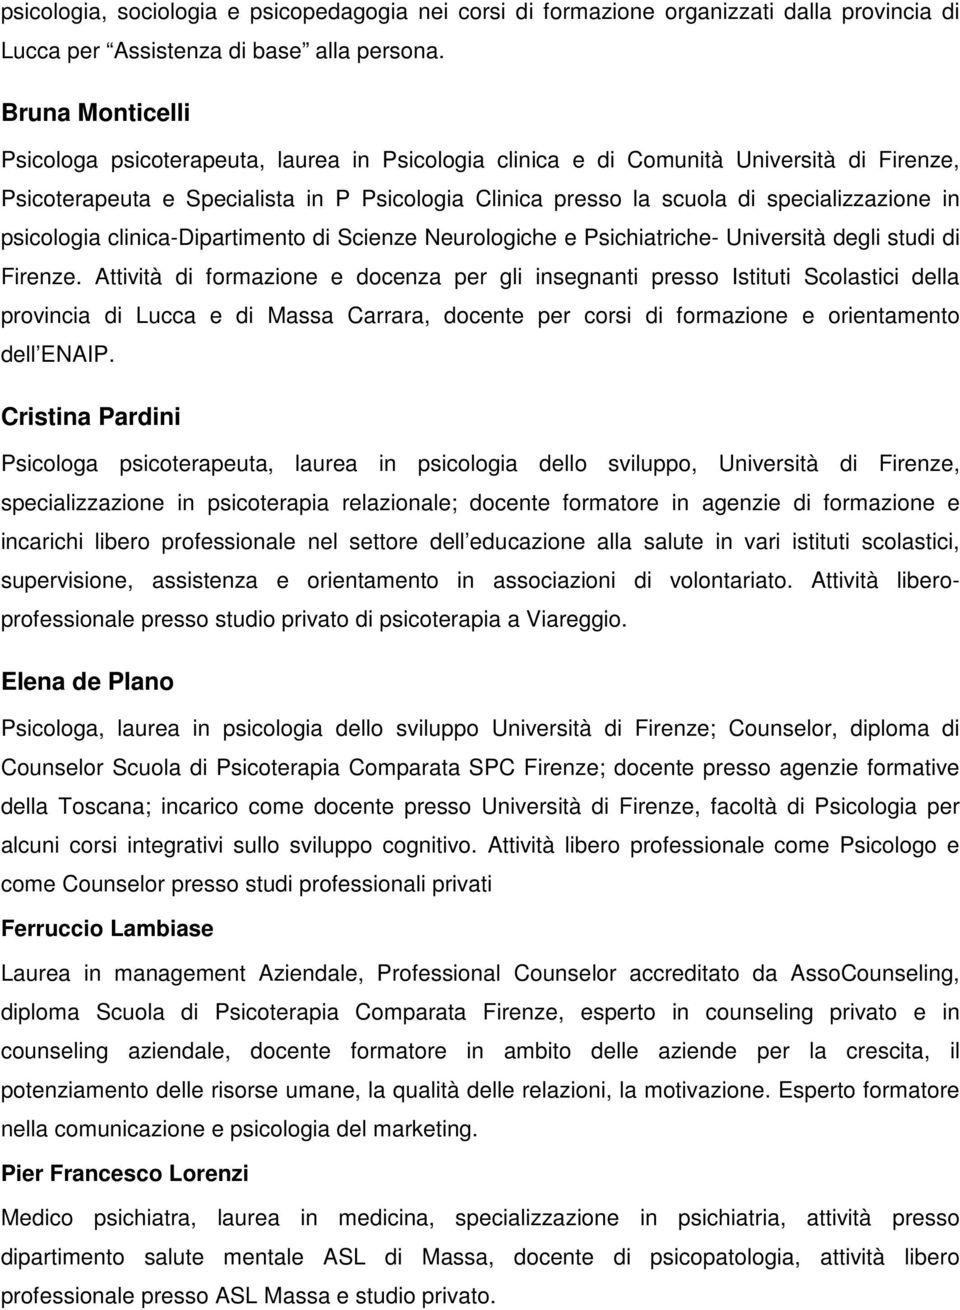 in psicologia clinica-dipartimento di Scienze Neurologiche e Psichiatriche- Università degli studi di Firenze.